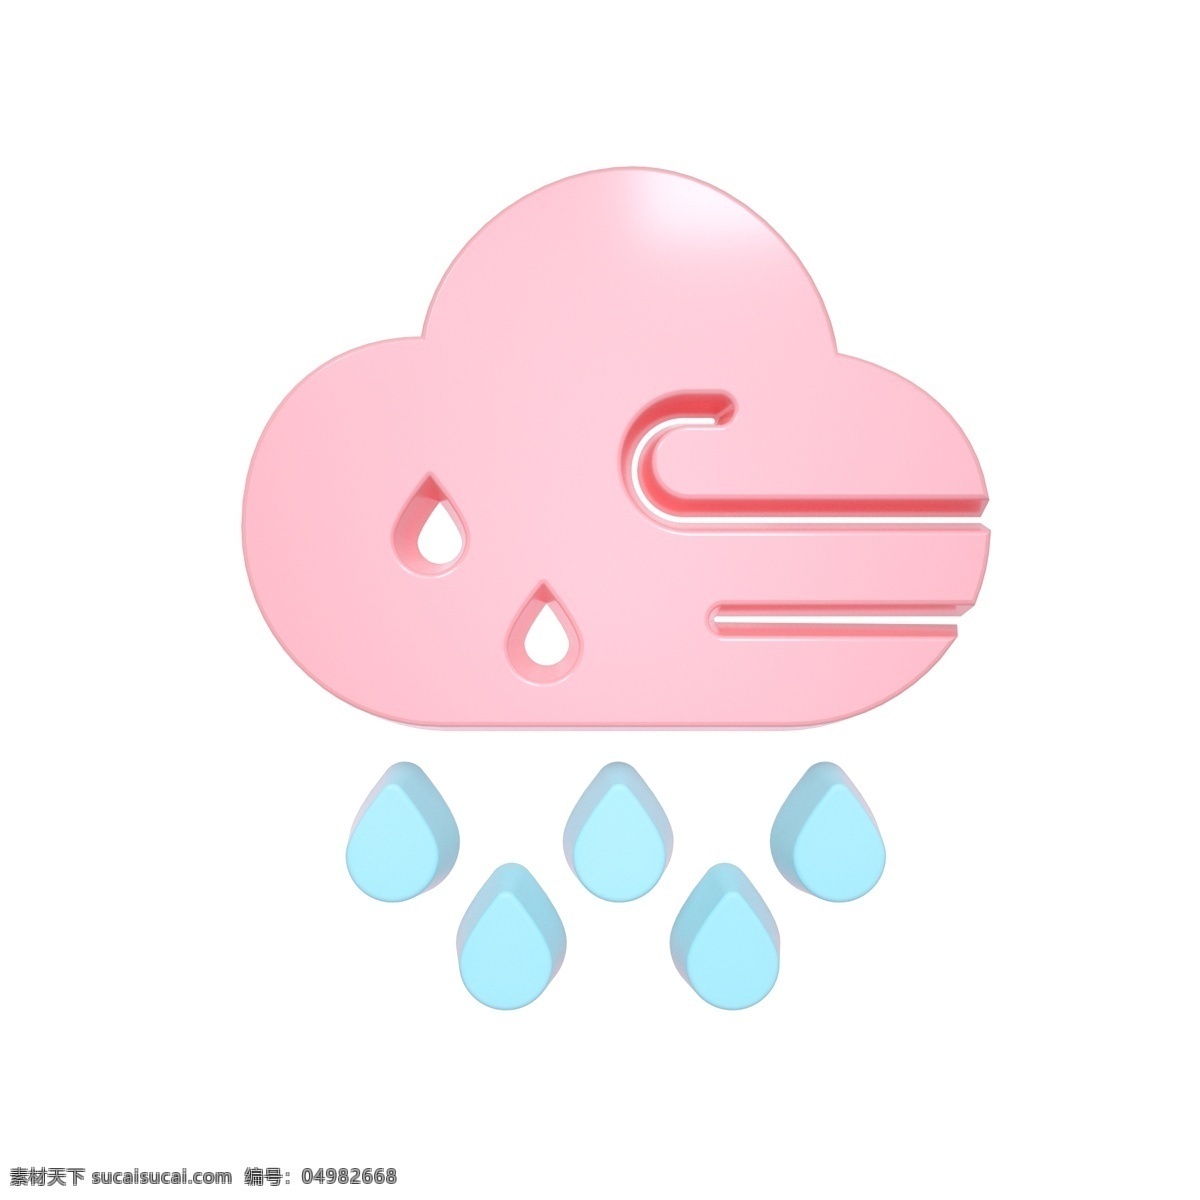 柔 色 天气 类 立体 图标 狂风暴雨 c4d 3d 柔色 粉色 天气类图标 通用图标装饰 可爱 常用